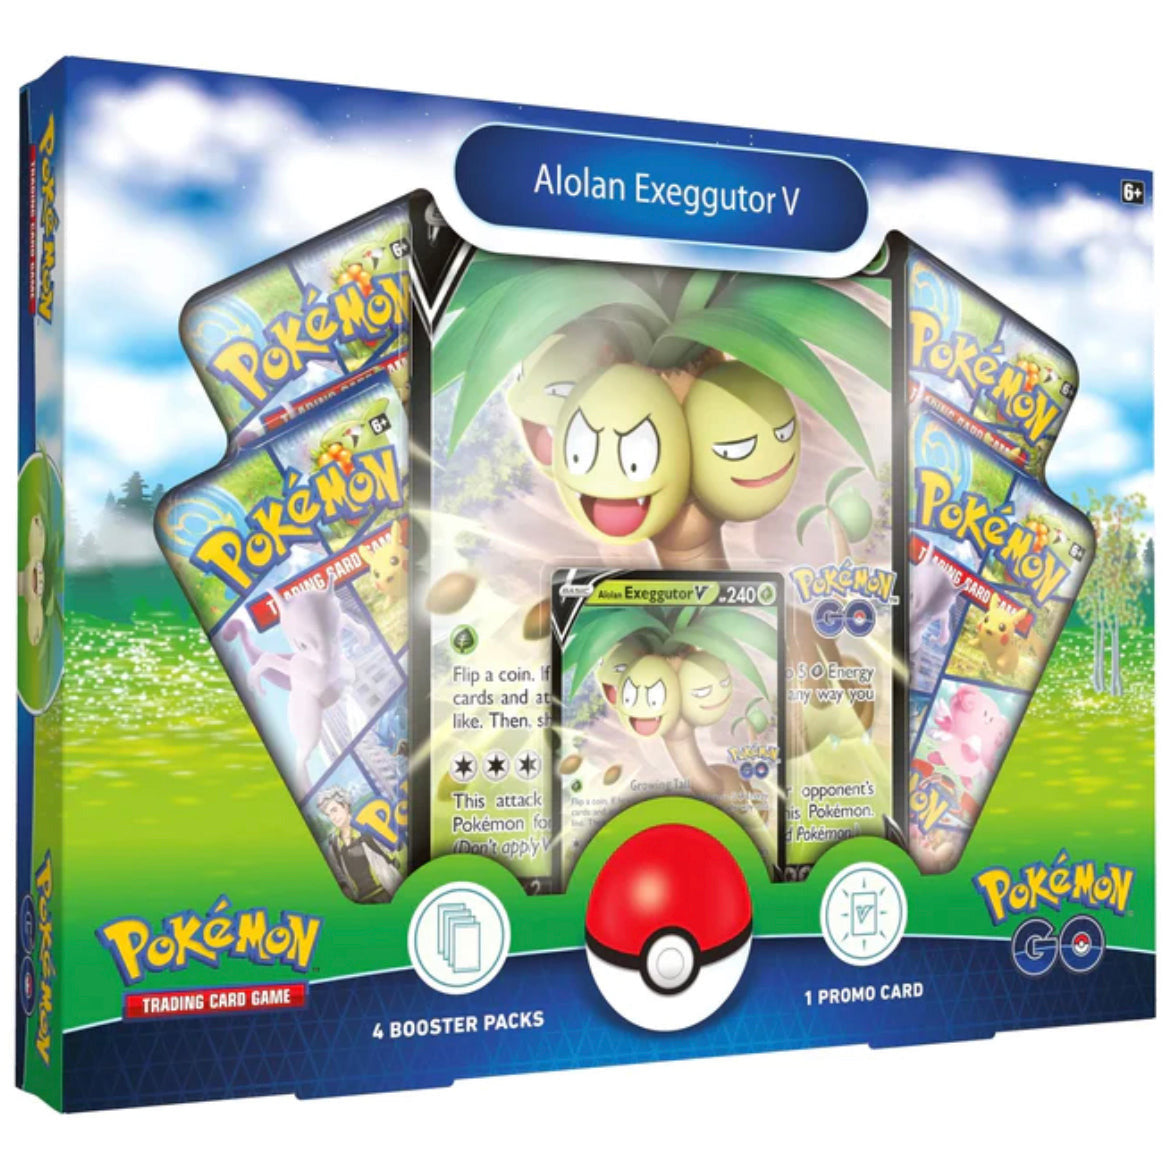 Pokémon Trading Card Game: Pokémon Go collection-Alolan Exeggutor V